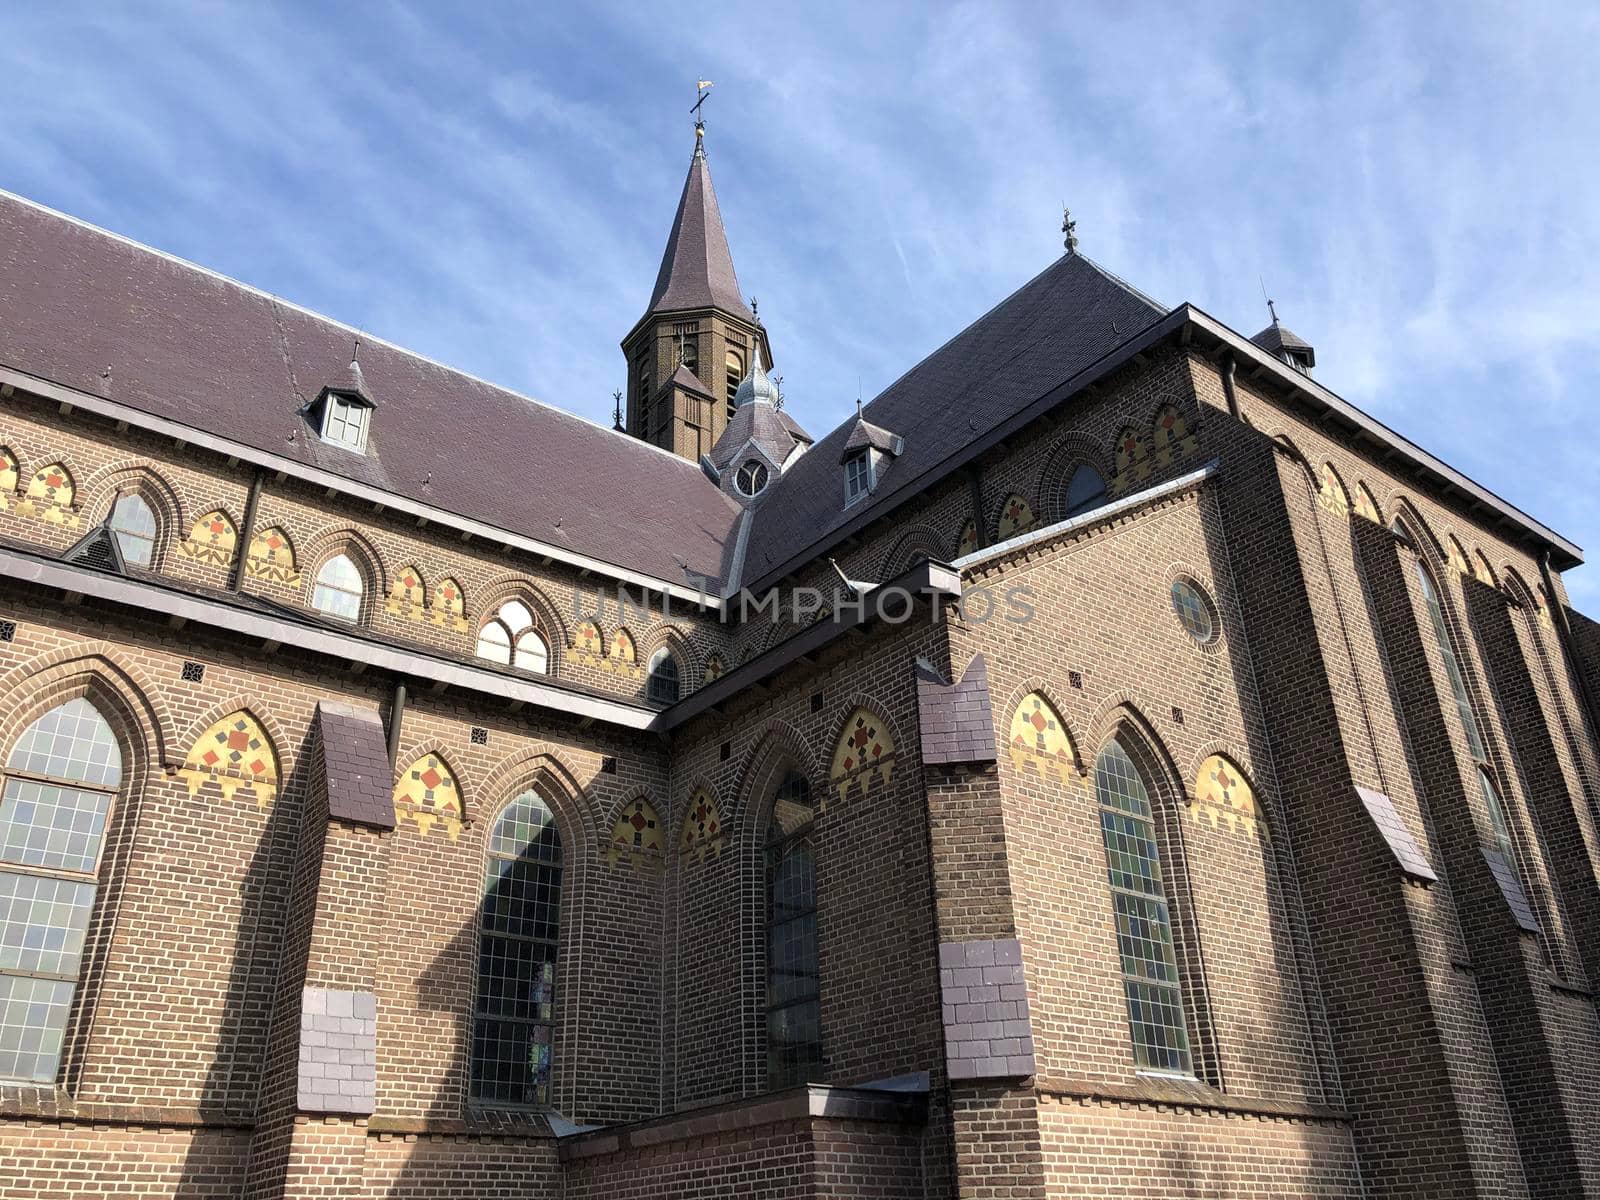 St. Anthony of Padua Church in Millingen aan de Rijn, The Netherlands